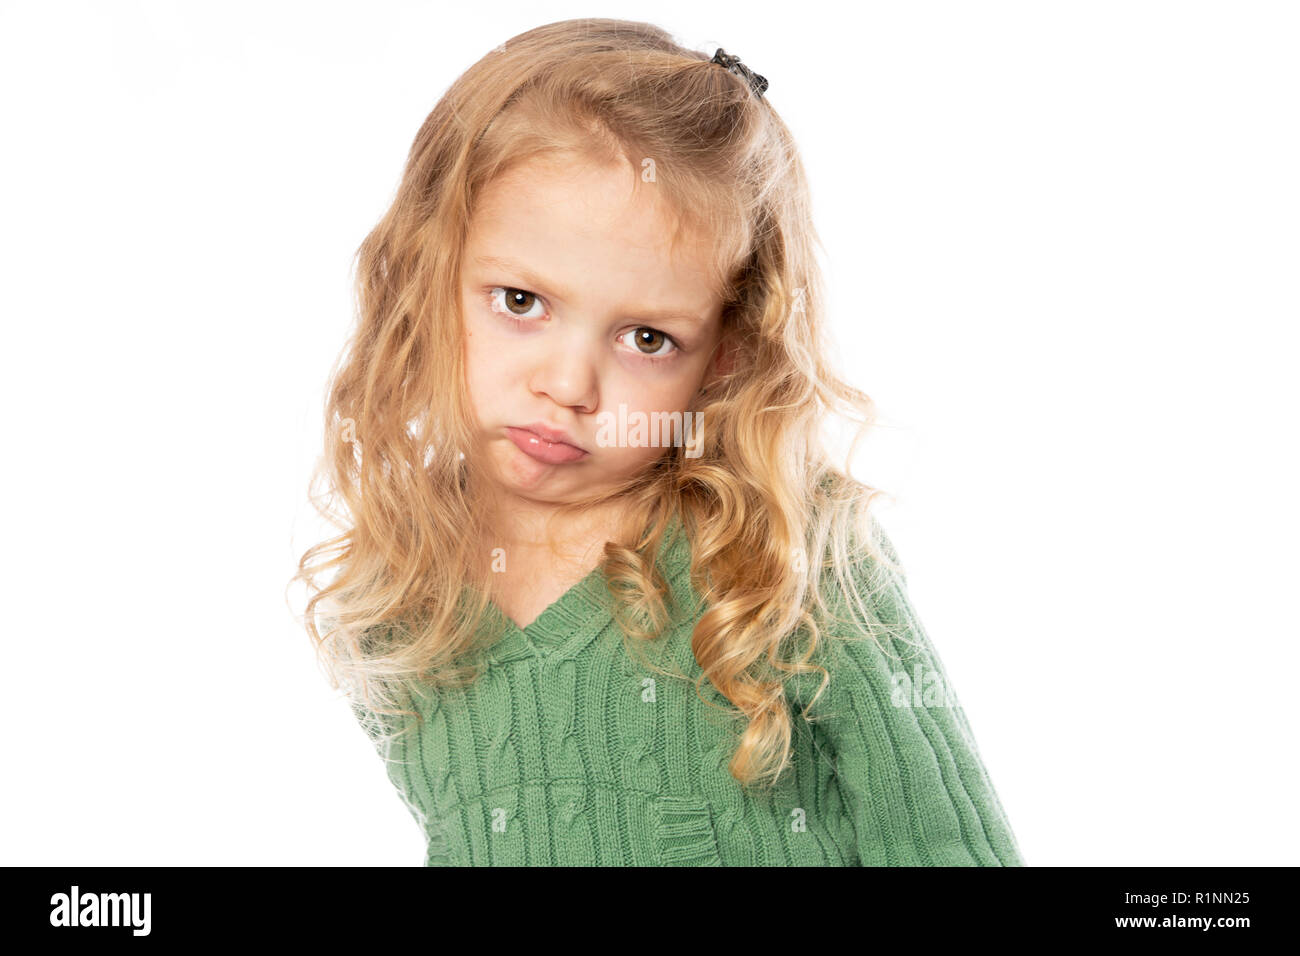 Una bambina di 3 anni isolati su sfondo bianco Foto Stock